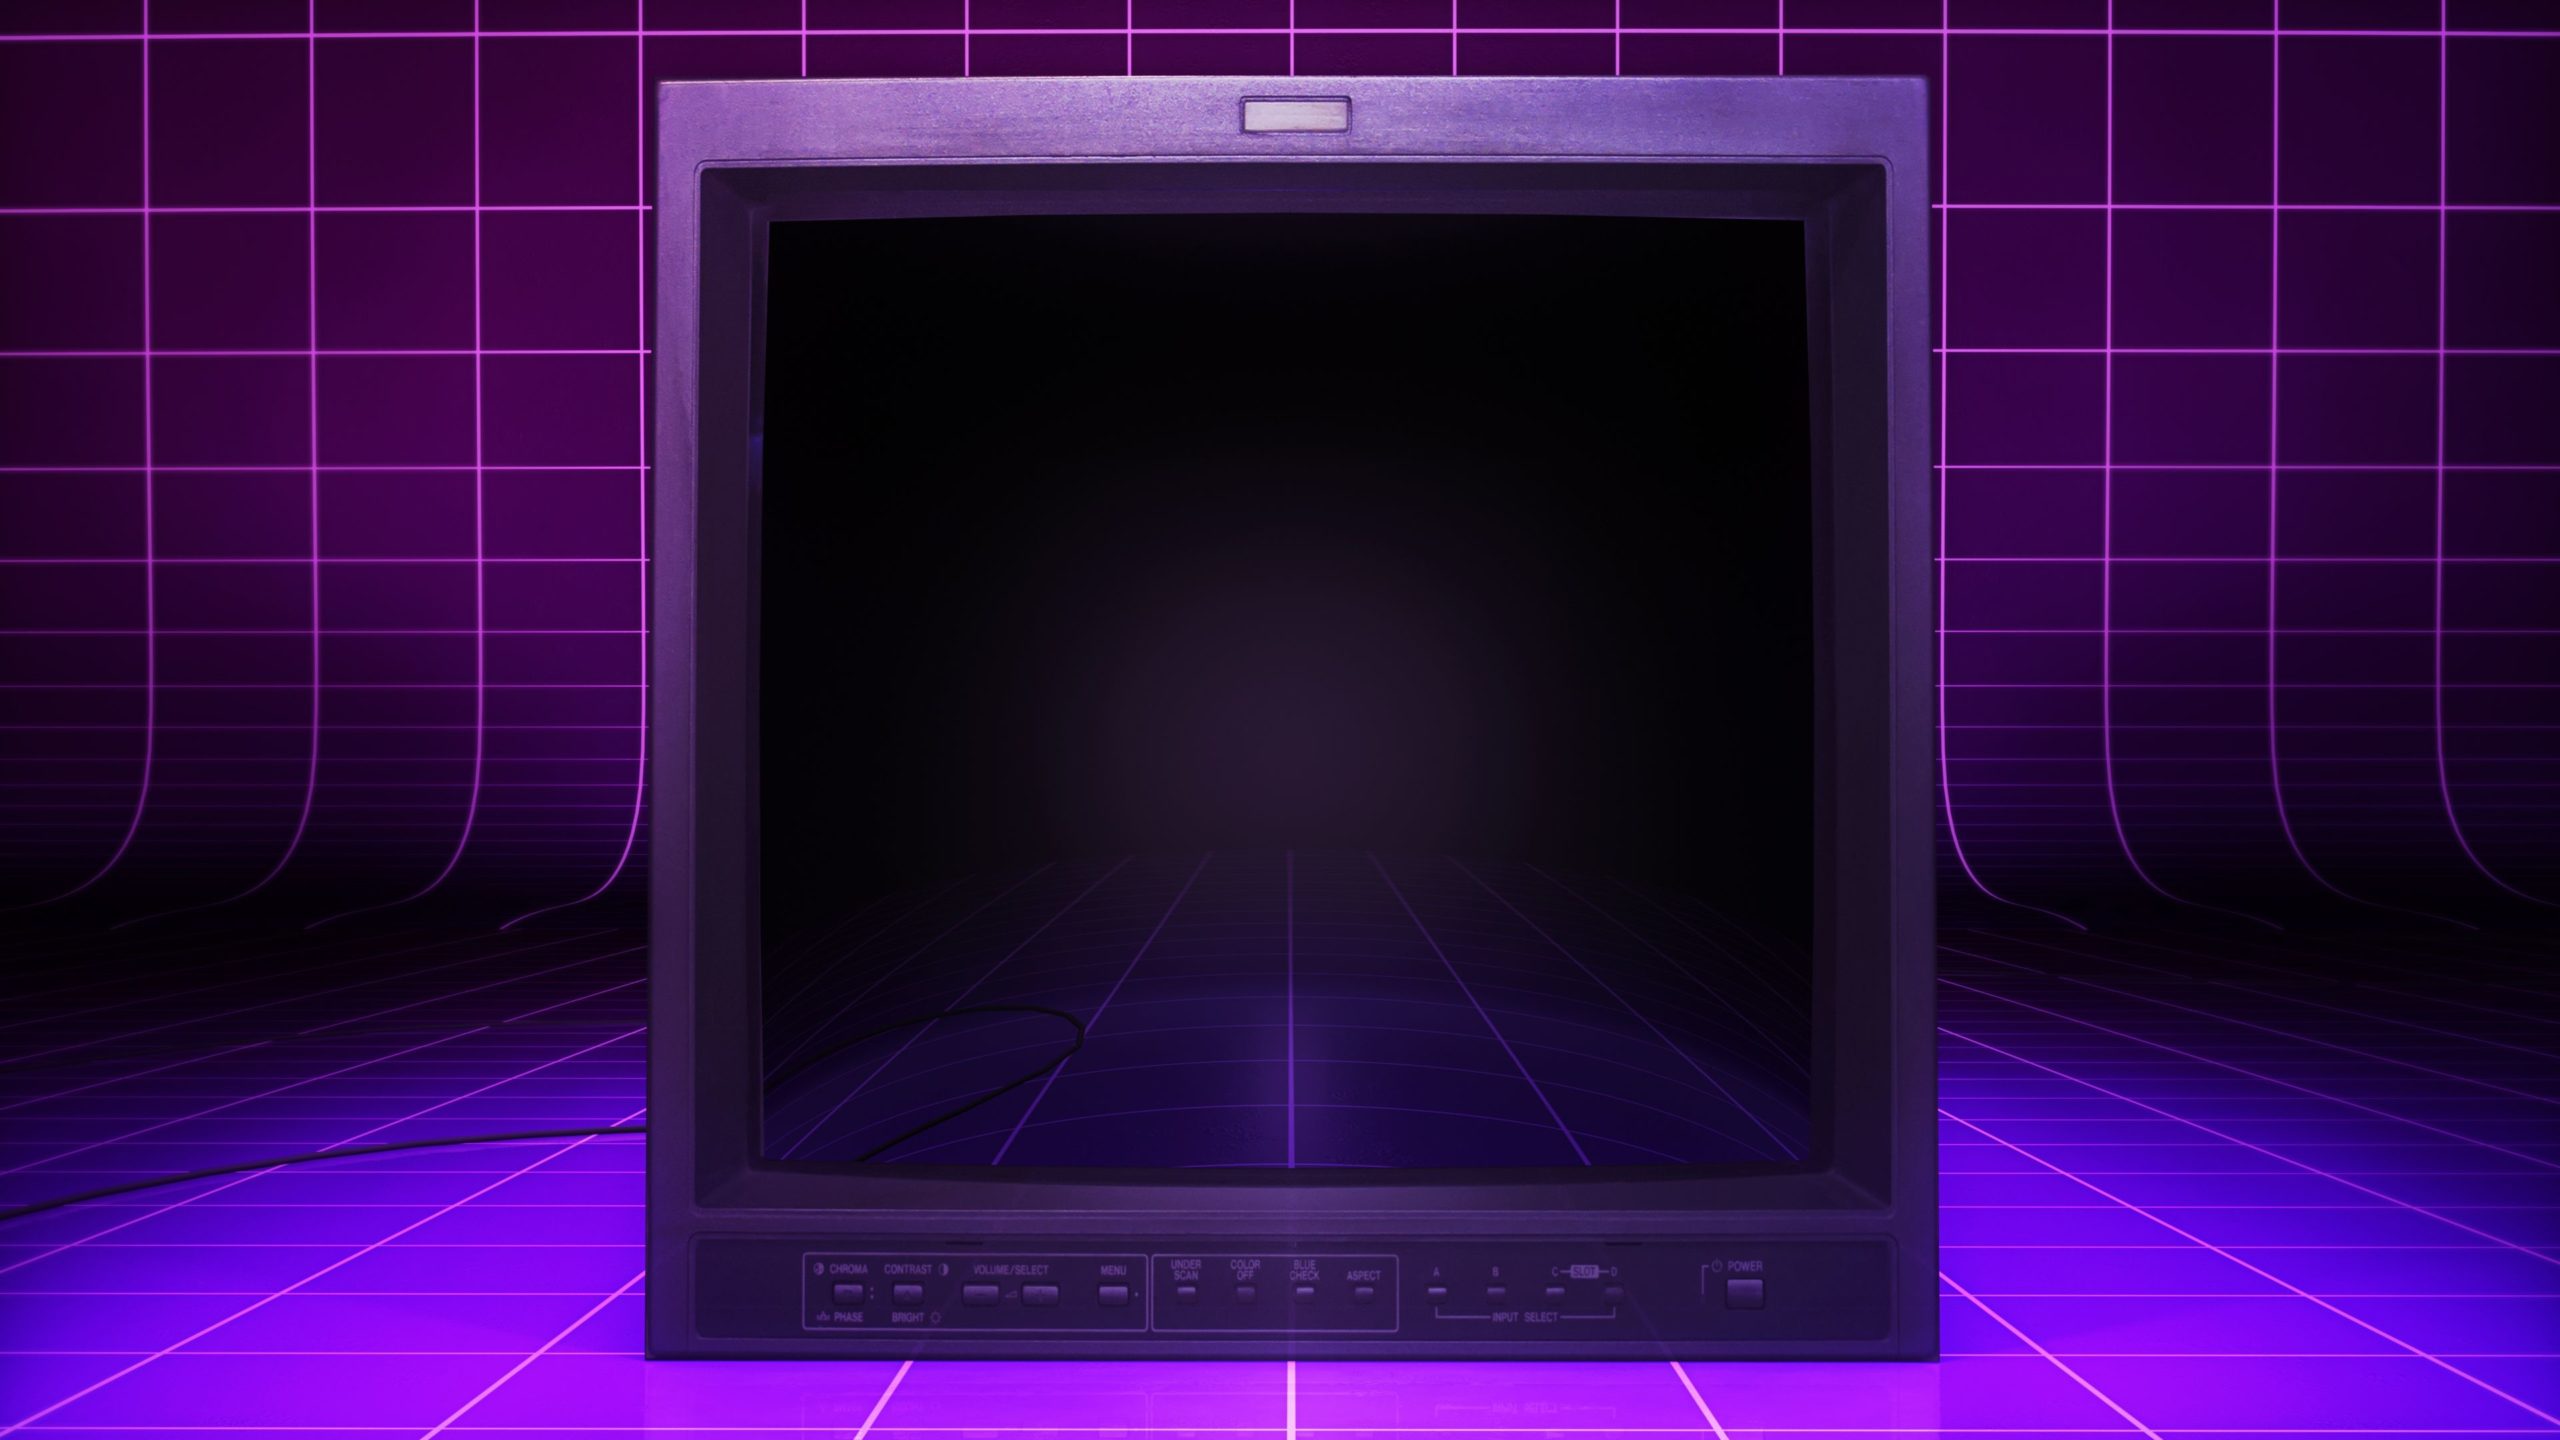 Um monitor CRT vintage com um fundo de grade de arcade retrô roxo.